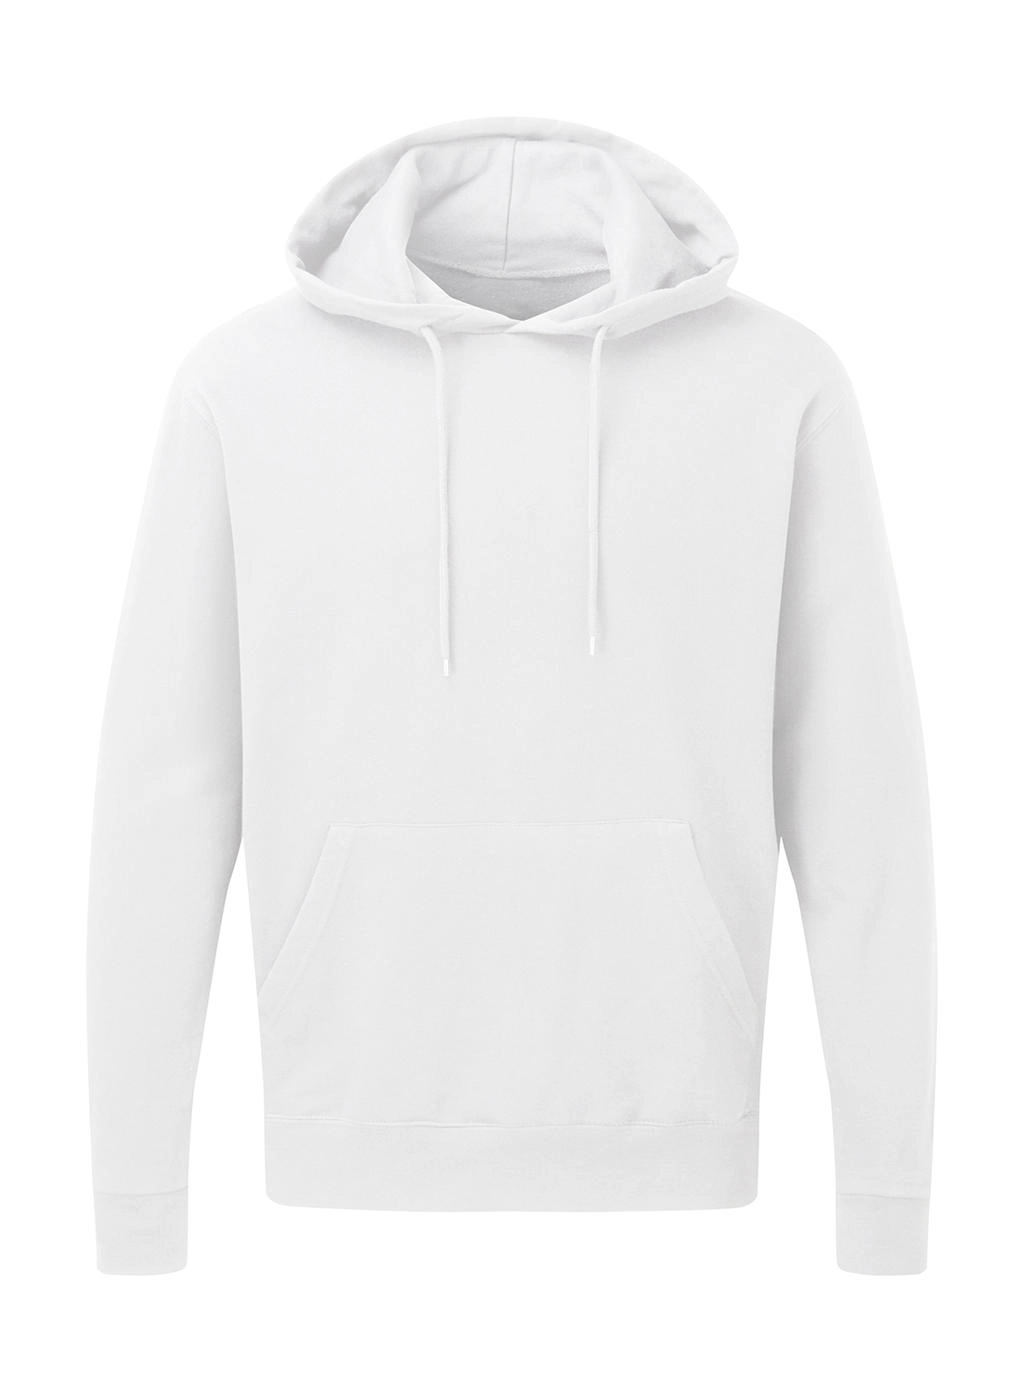 Hooded Sweatshirt Men zum Besticken und Bedrucken in der Farbe White mit Ihren Logo, Schriftzug oder Motiv.